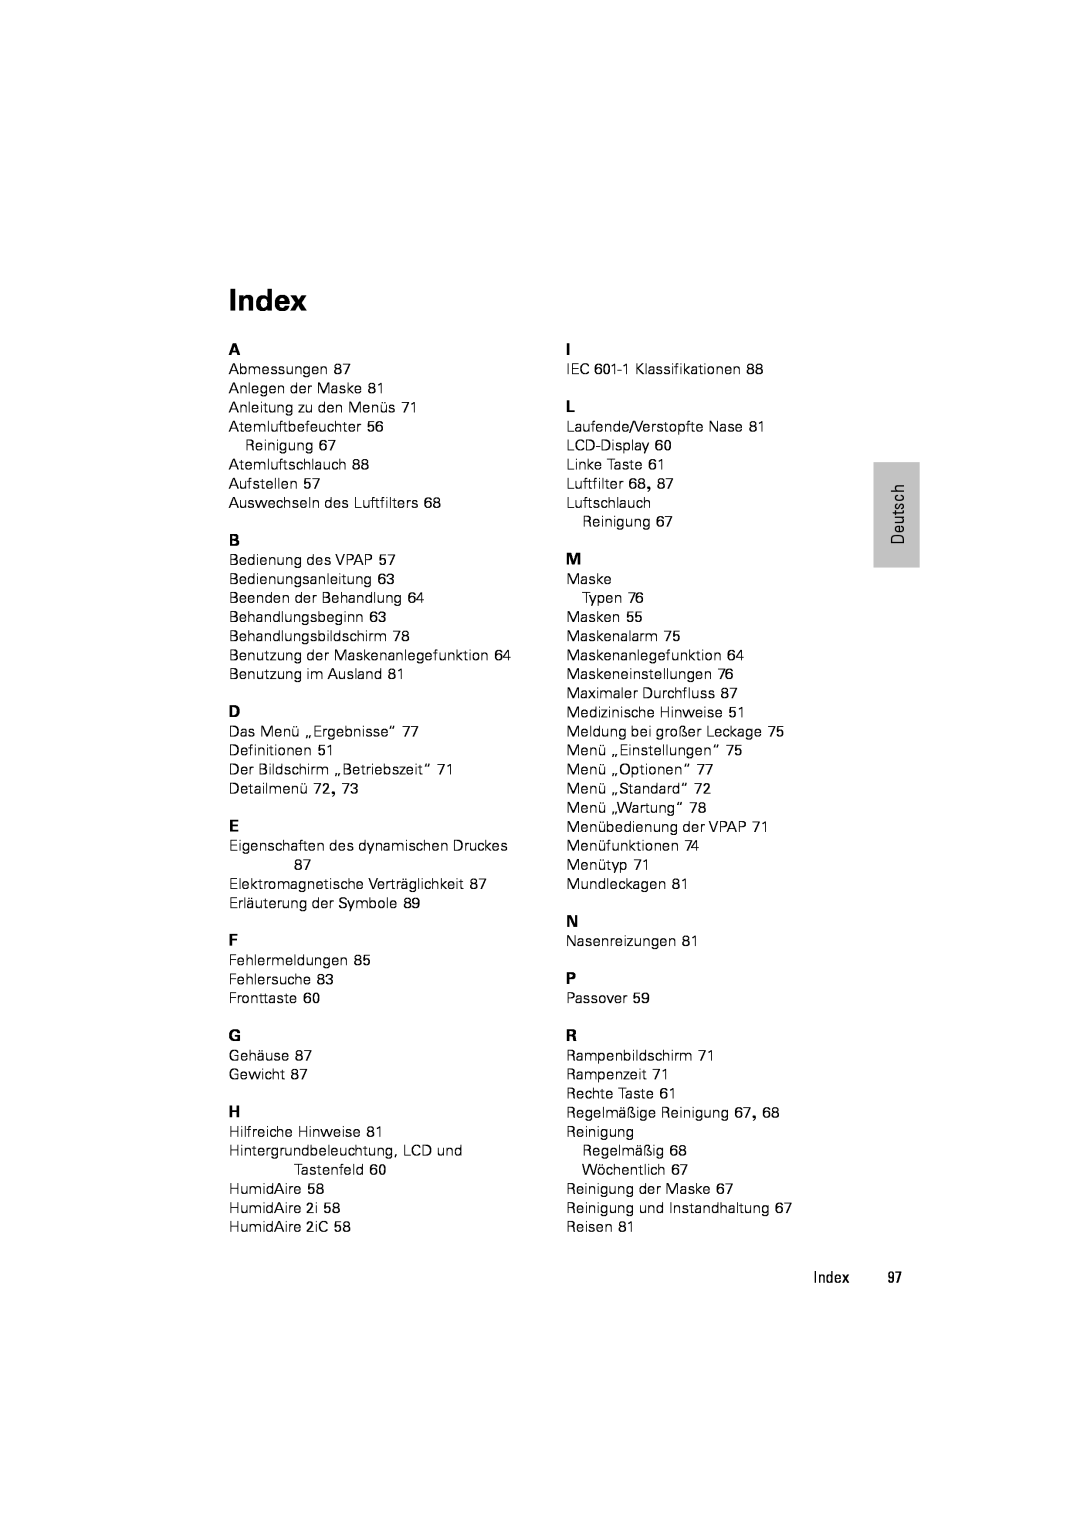 ResMed III & III ST user manual Index, Reinigung 